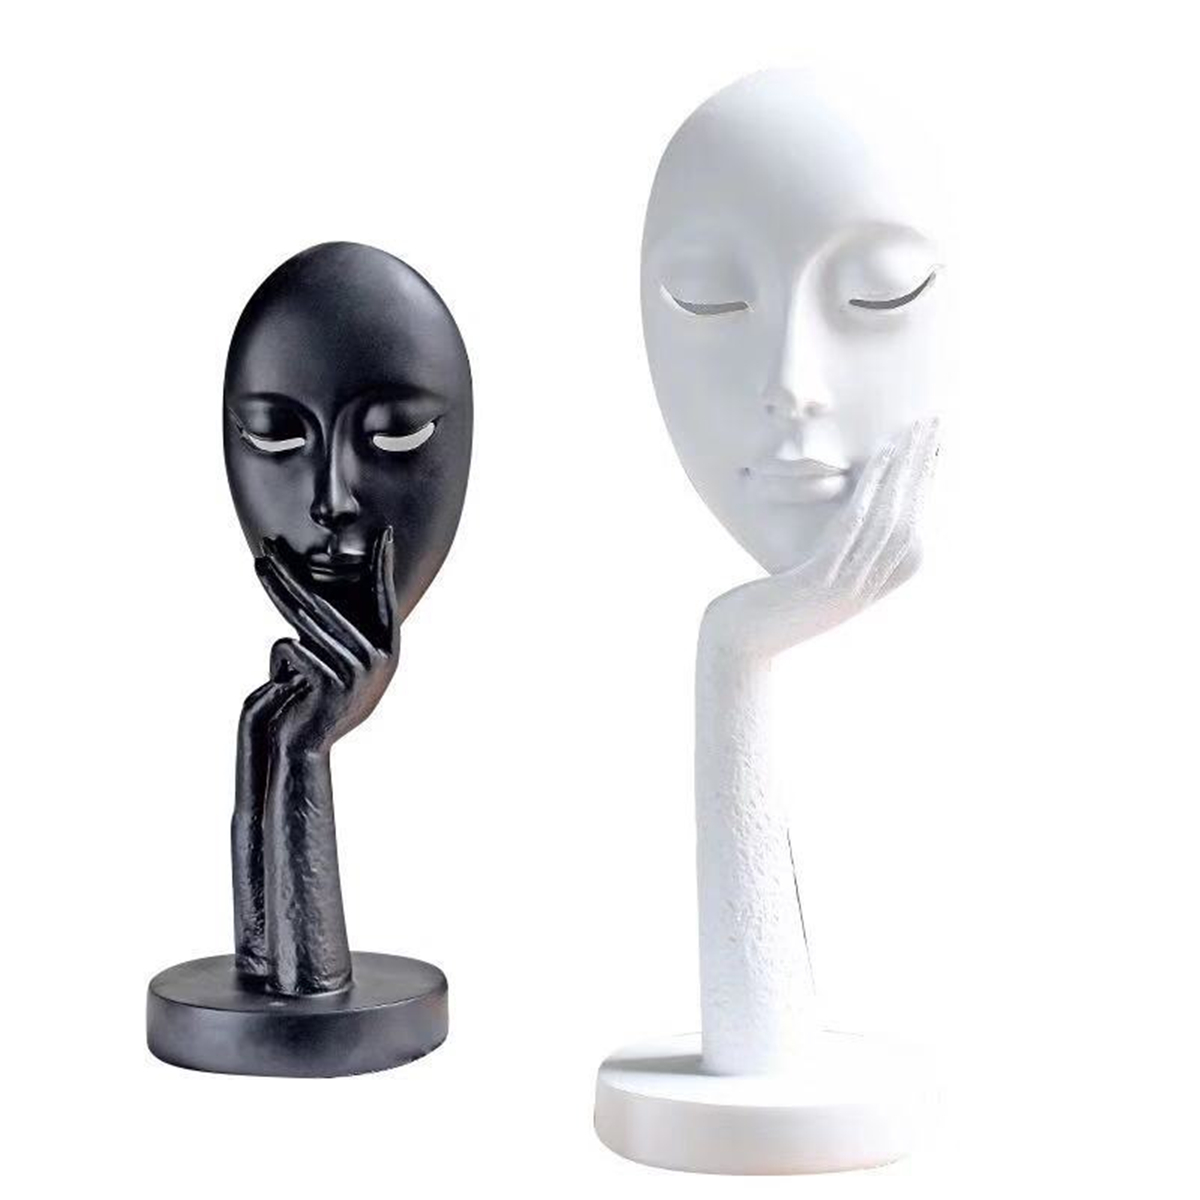 

Modern Thinker Face Mask Sculpture Figurine Statue Home Office Bar Art Decorations